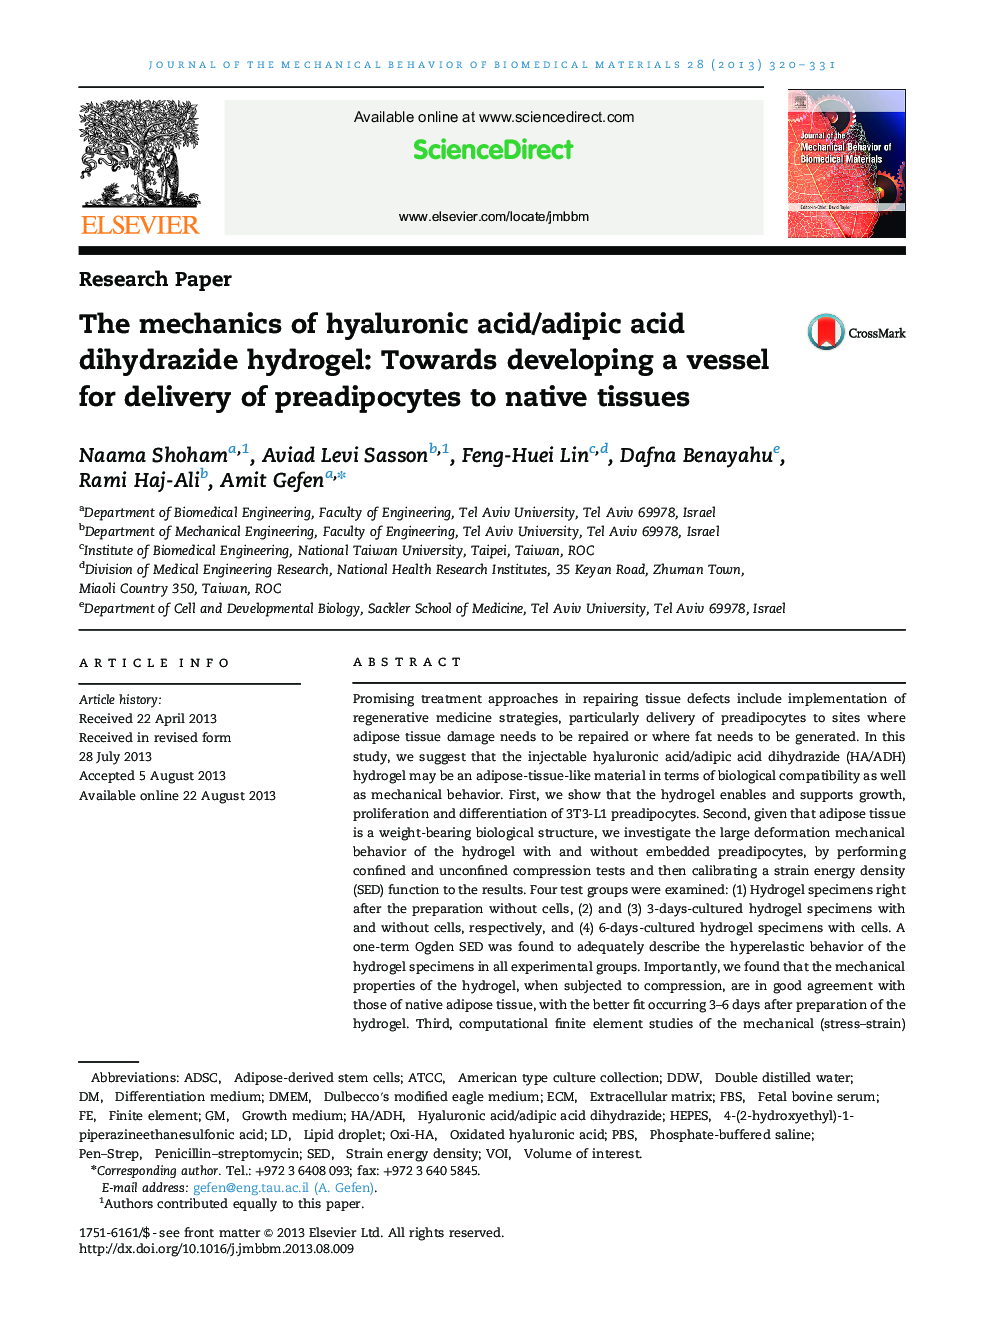 مکانیک اسید هیالورونیک / آدیپیک دی هیدرازید هیدروژل: در جهت توسعه یک رگ برای تحویل پیش دیپوسیت به بافتهای بومی 